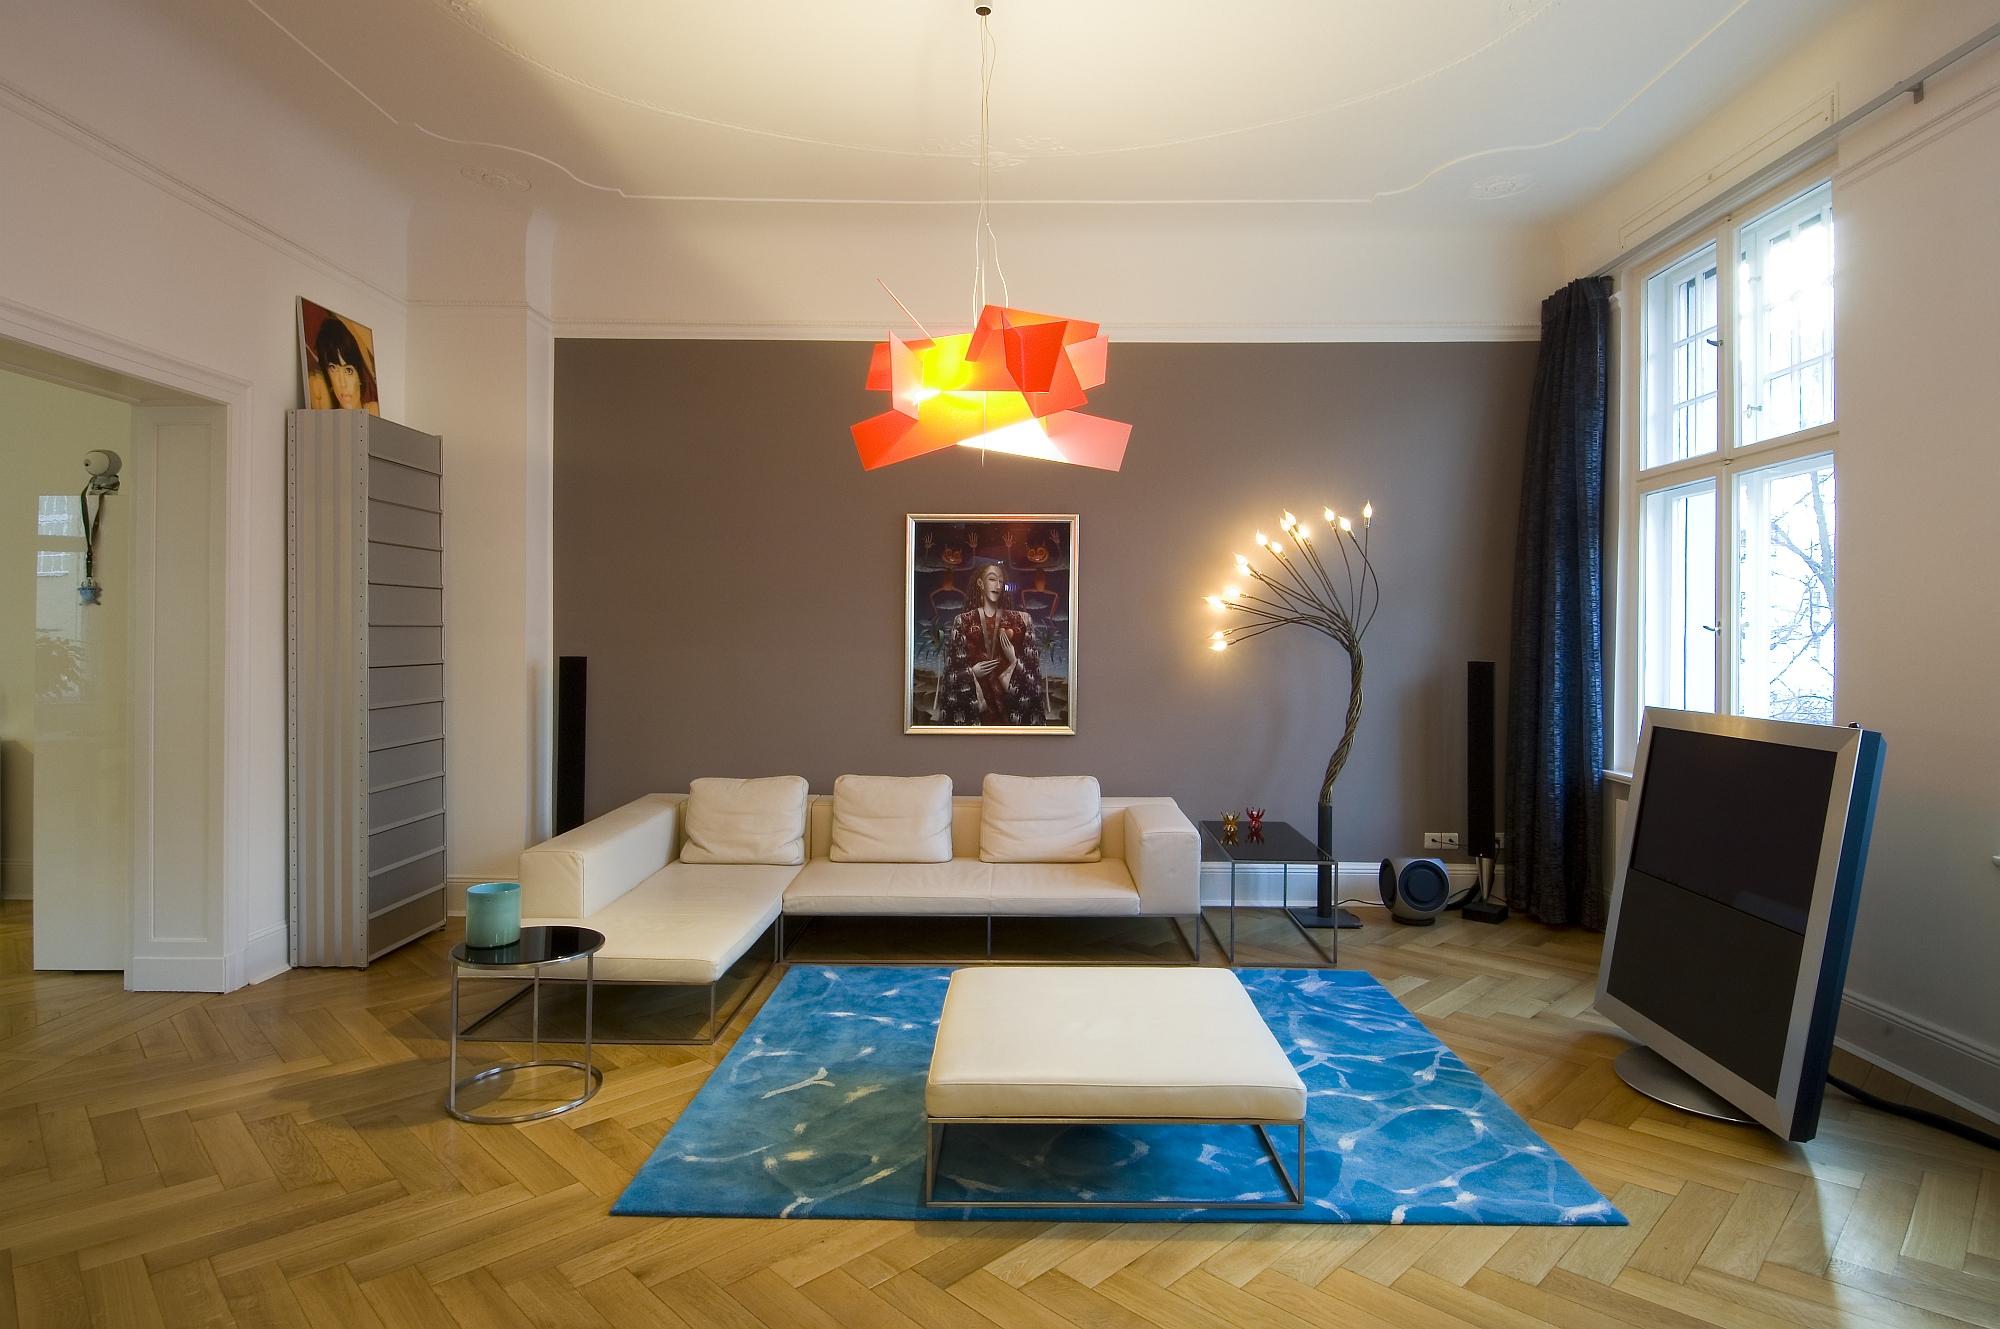 Apartment Berlin-Wilmersdorf #beistelltisch #wandfarbe #teppich #stehlampe #schrank #ottomane #fischgrätparkett #anthrazitwandfarbe ©www.berlinrodeo.com